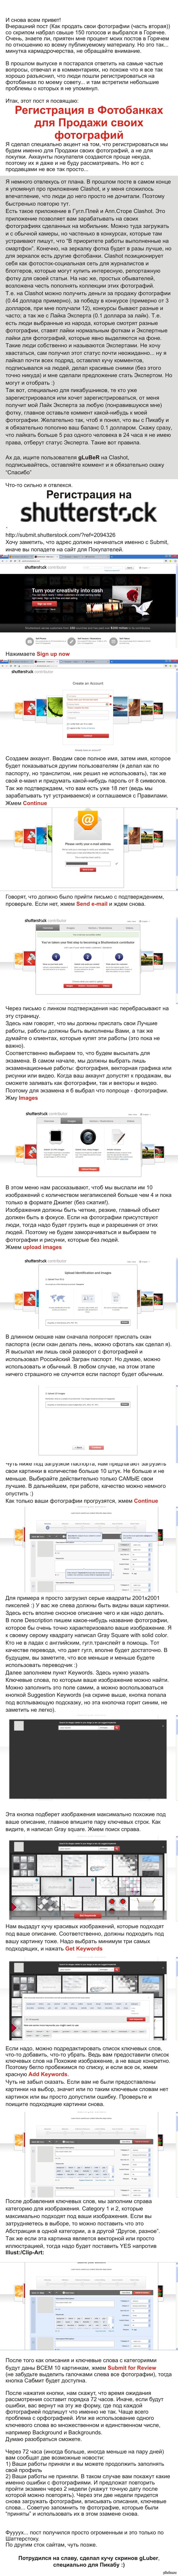     ( ,   Shutterstock)     : <a href="http://pikabu.ru/story/kak_prodat_svoi_fotografii_chast_vtoraya_2507019">http://pikabu.ru/story/_2507019</a>